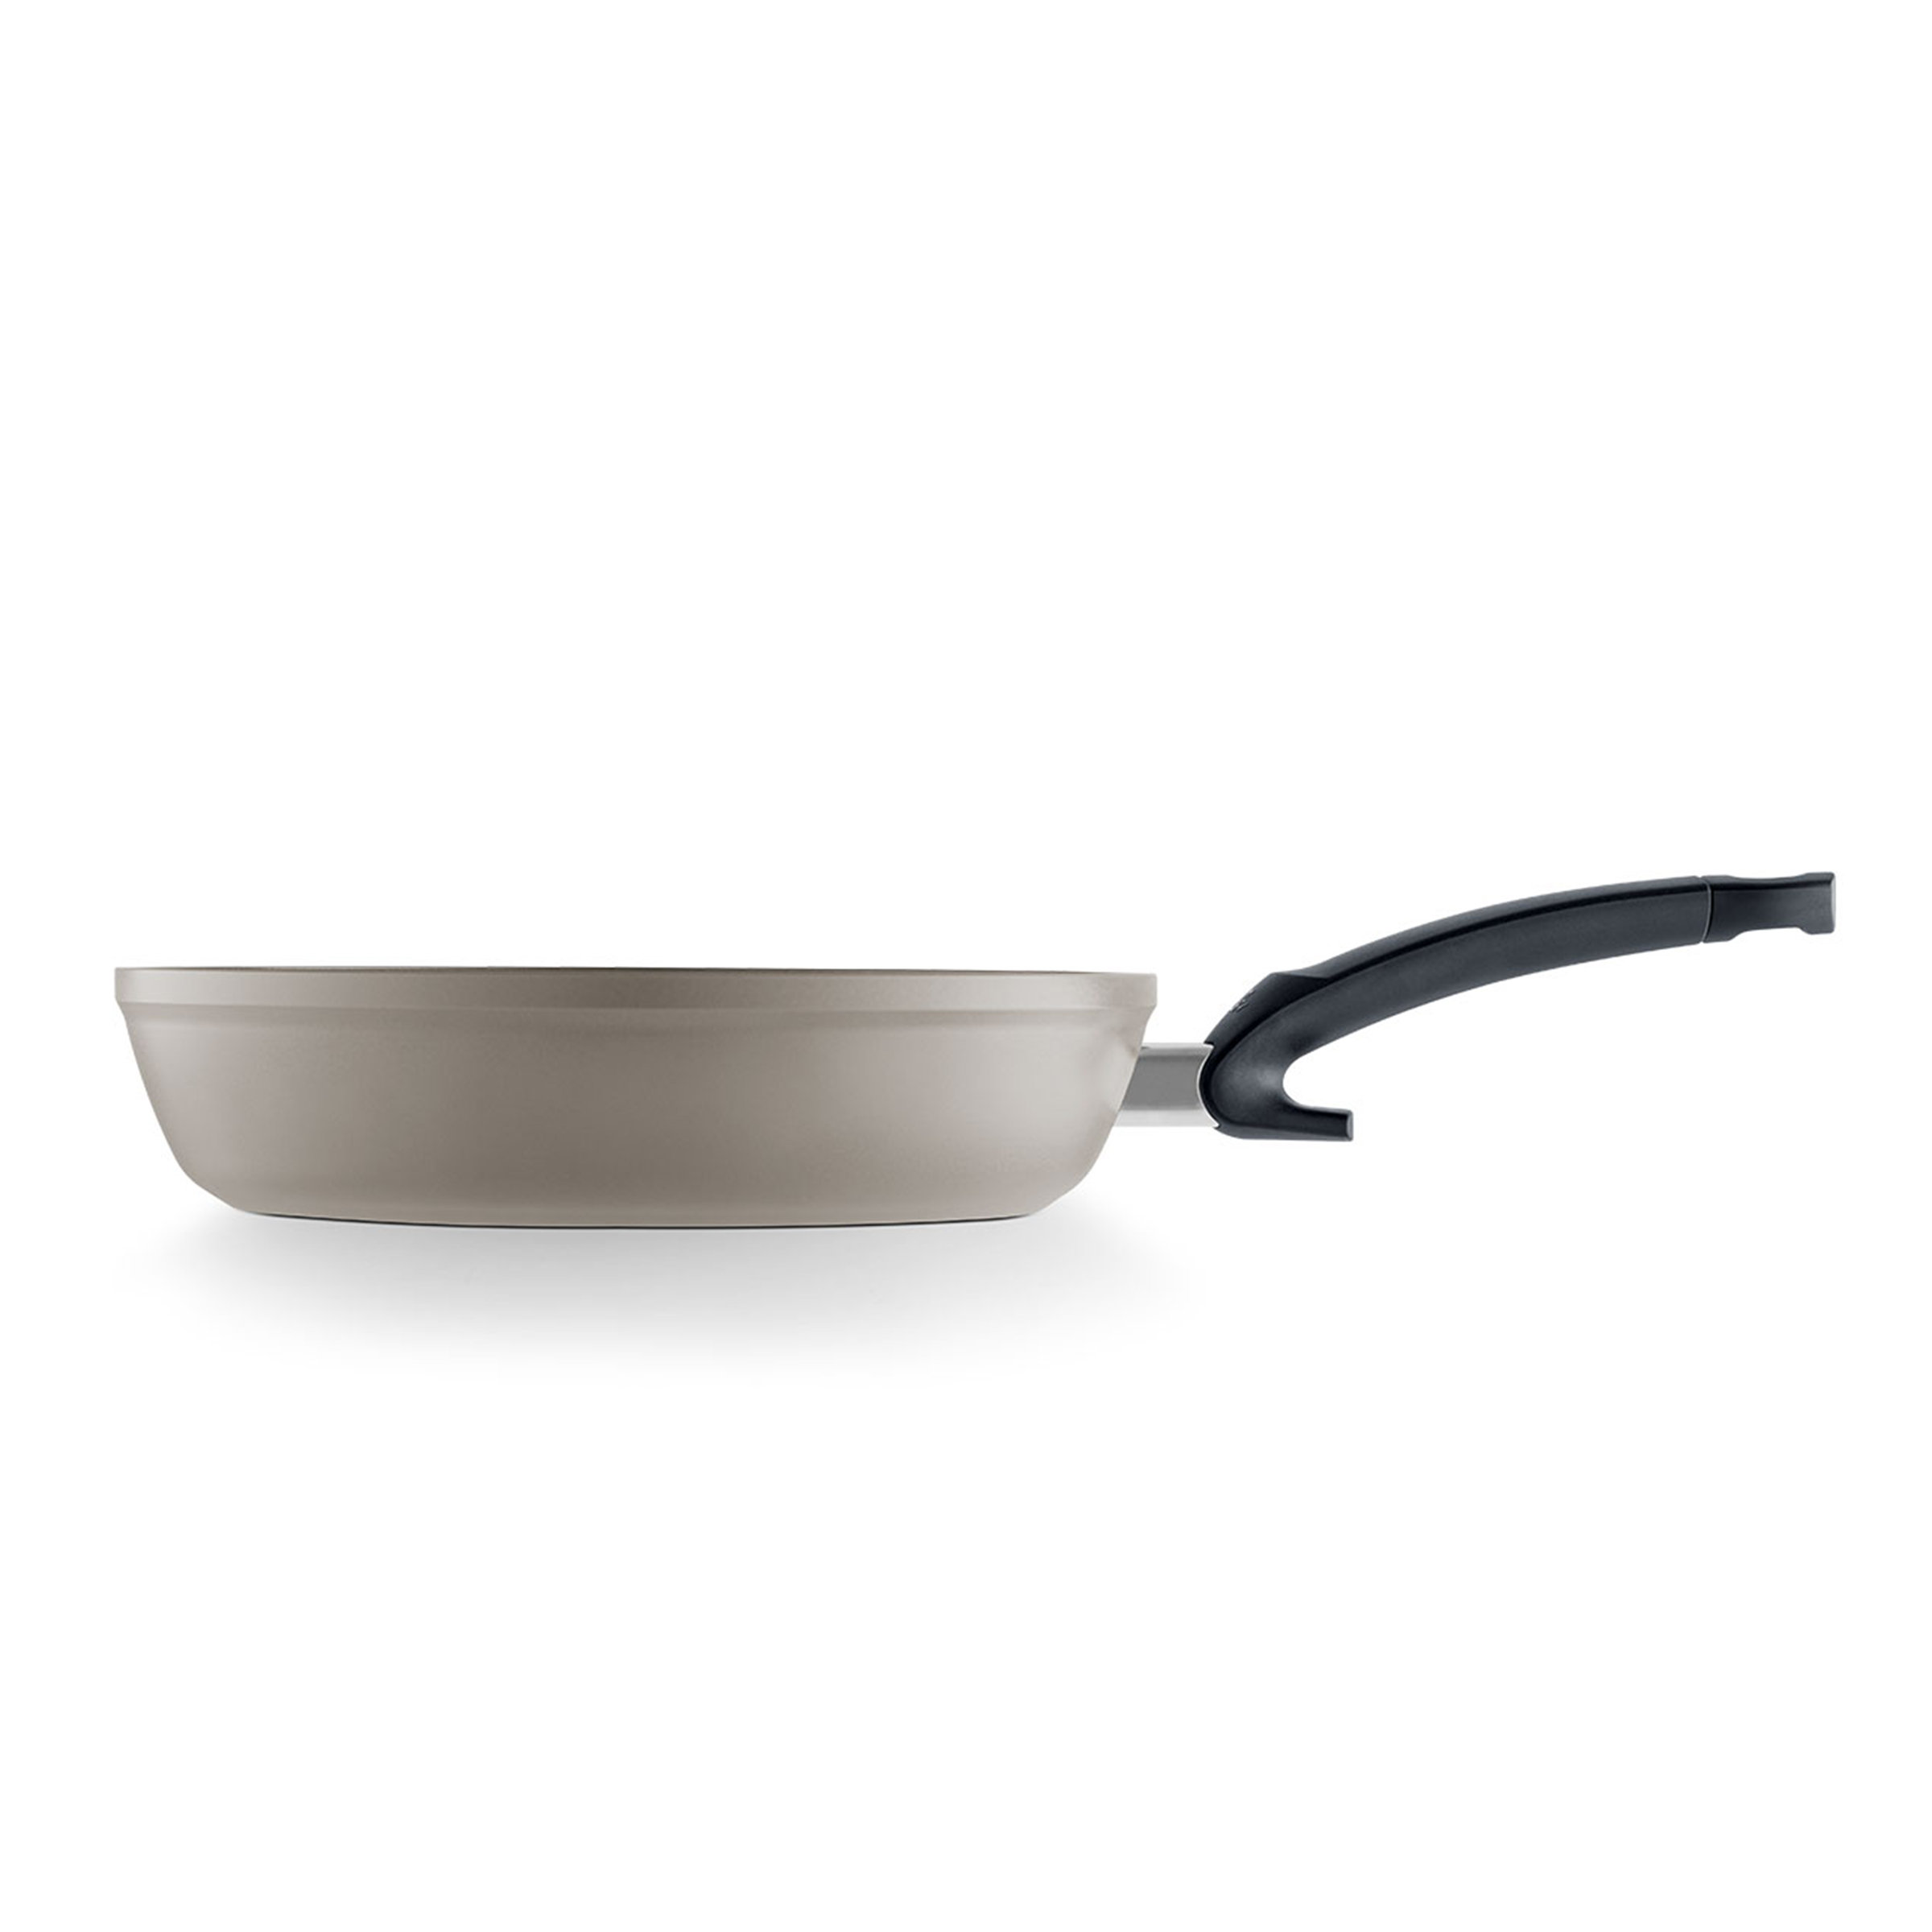 Fissler Ceratal Comfort Ceramic Frying Pan, 10.2